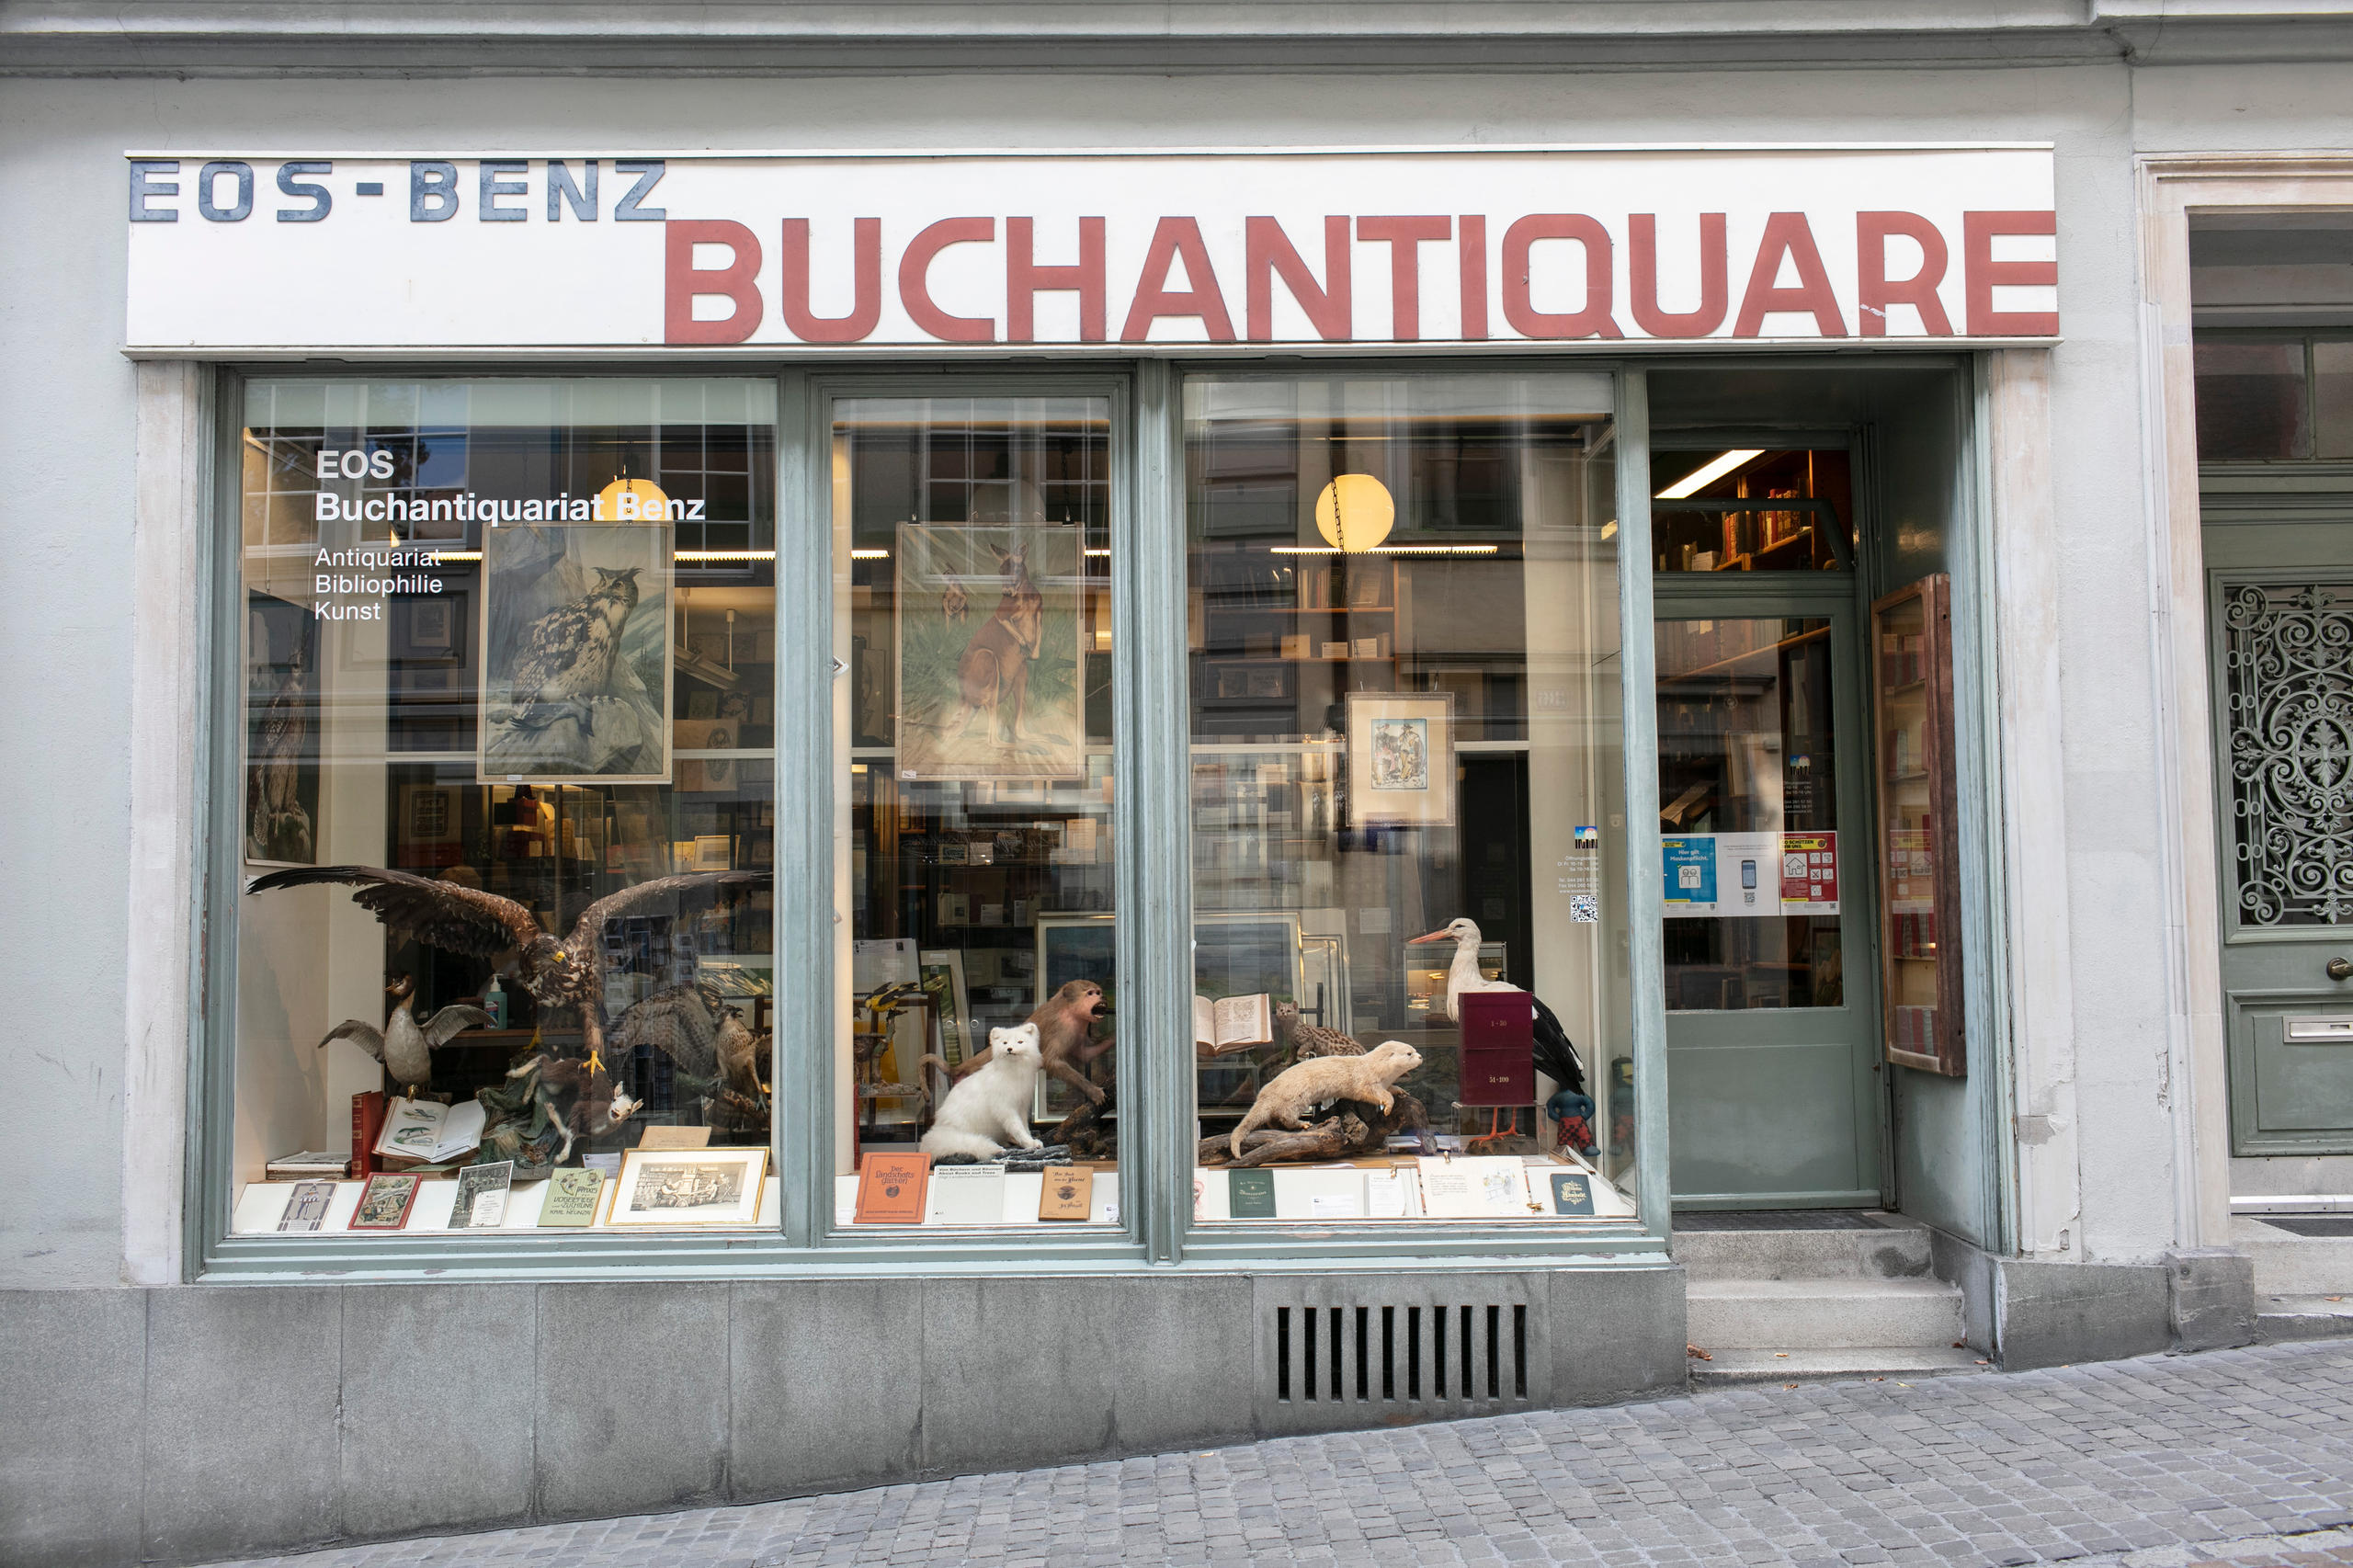 ベンツEOS古書籍商。チューリヒ旧市街のキルヒガッセ17番地に店を構える